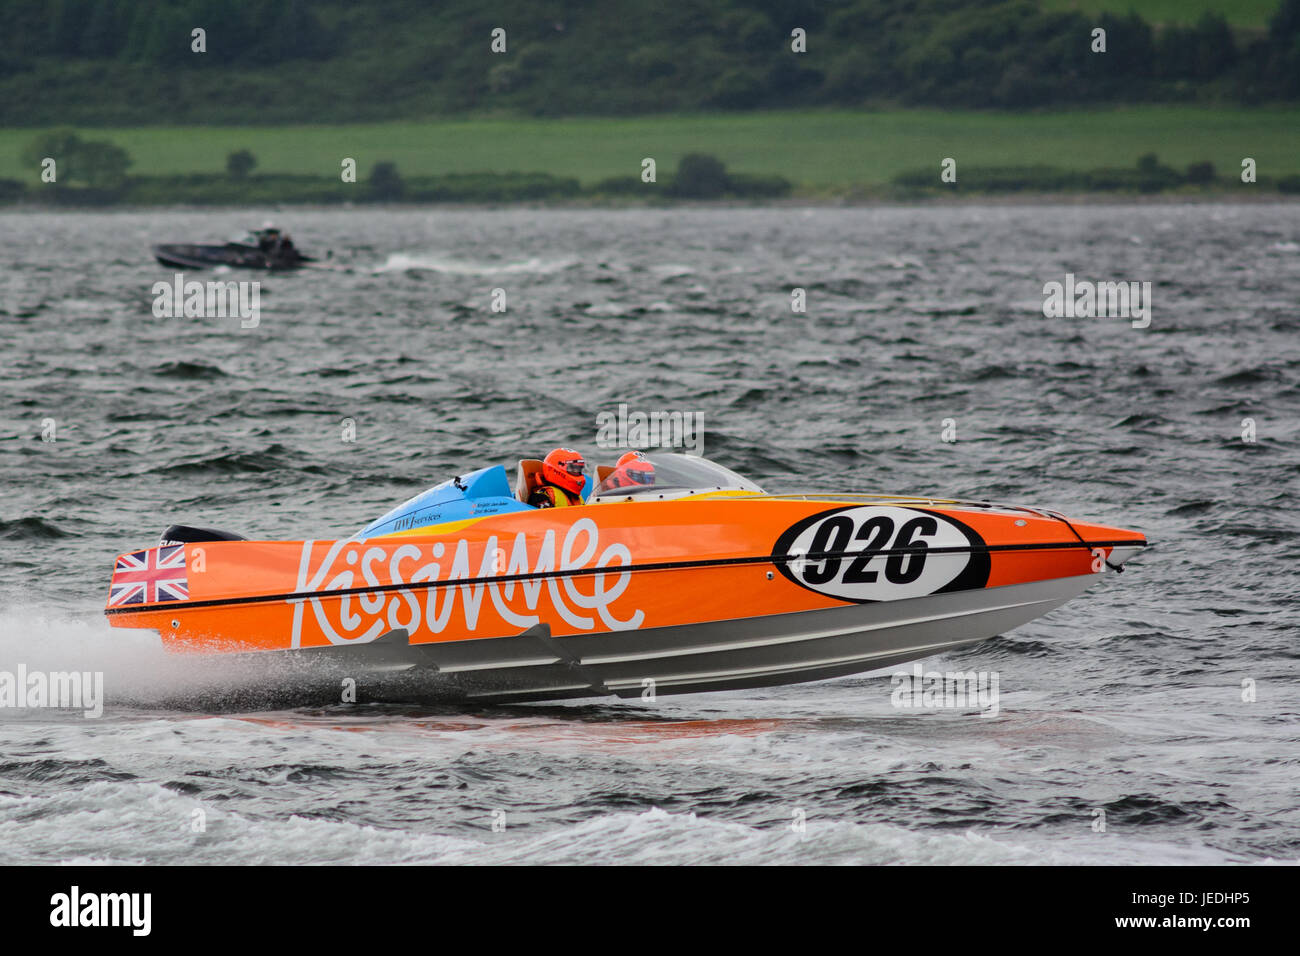 P1 Superstock powerboat" Racing de la Explanada, Greenock, Escocia, el 24 de junio de 2017. 926, experiencia Kissimmee Racing Team, en la acción impulsada por Neil Jackson y navegado por Jason Jackson. Foto de stock